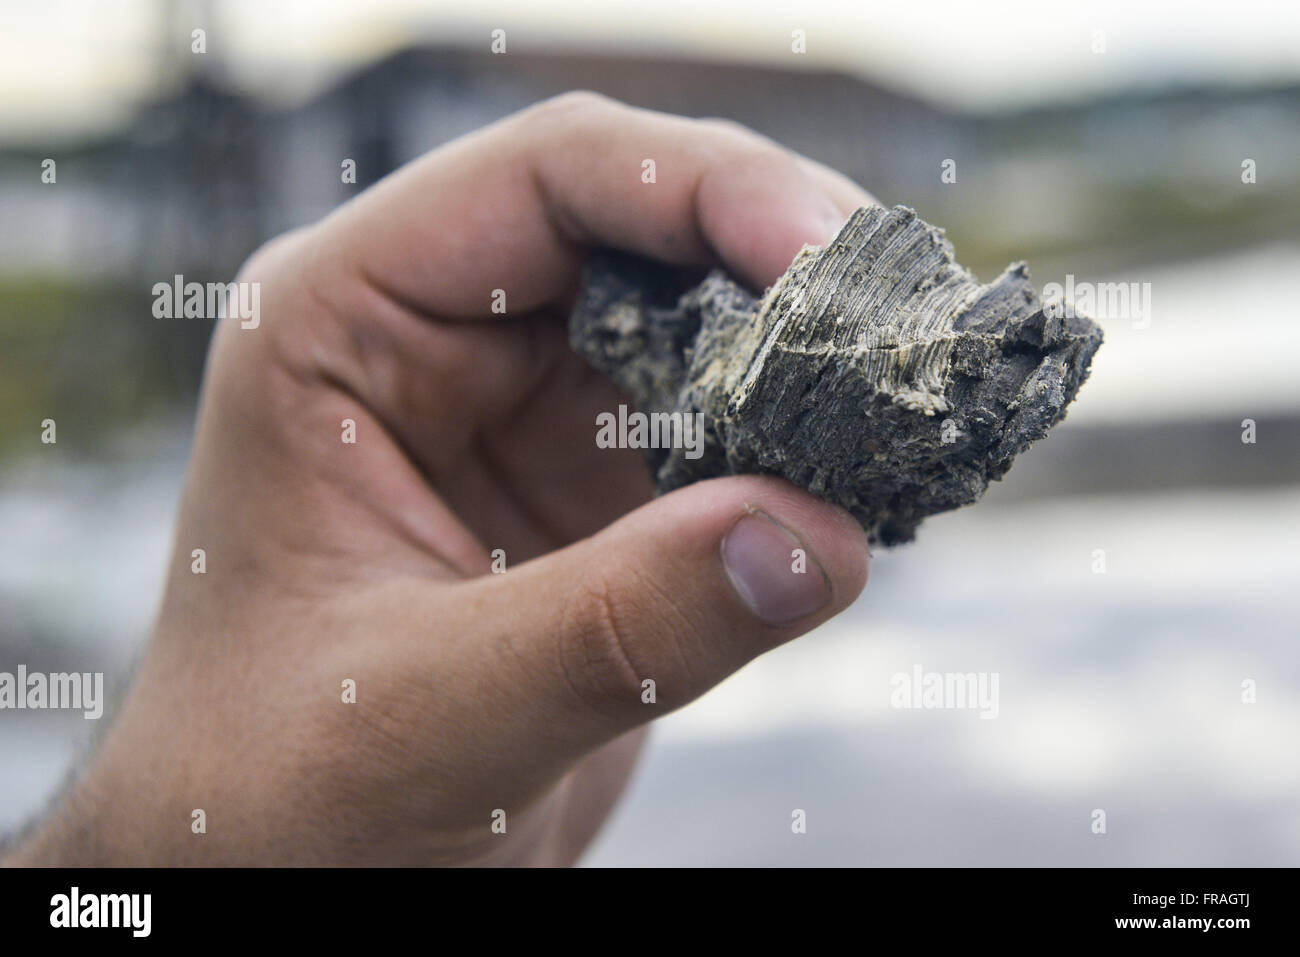 Stromatolithen bestehend aus Dolomit - Calciumcarbonat und Magnesium - in Kochsalzlösung in Red Lake Stockfoto